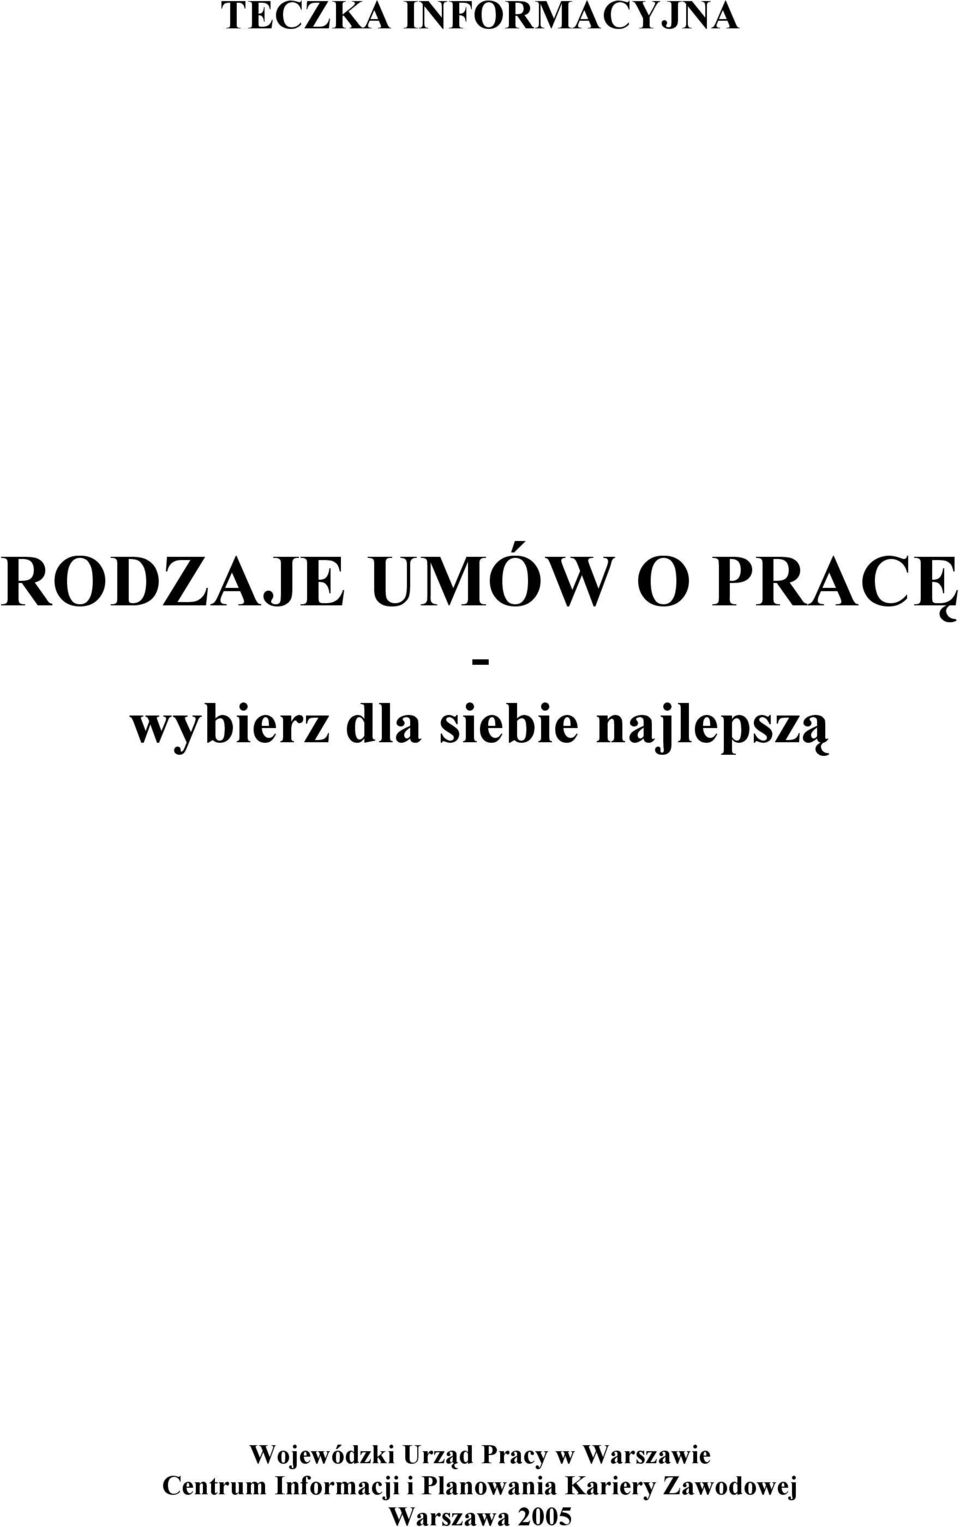 Urząd Pracy w Warszawie Centrum Informacji